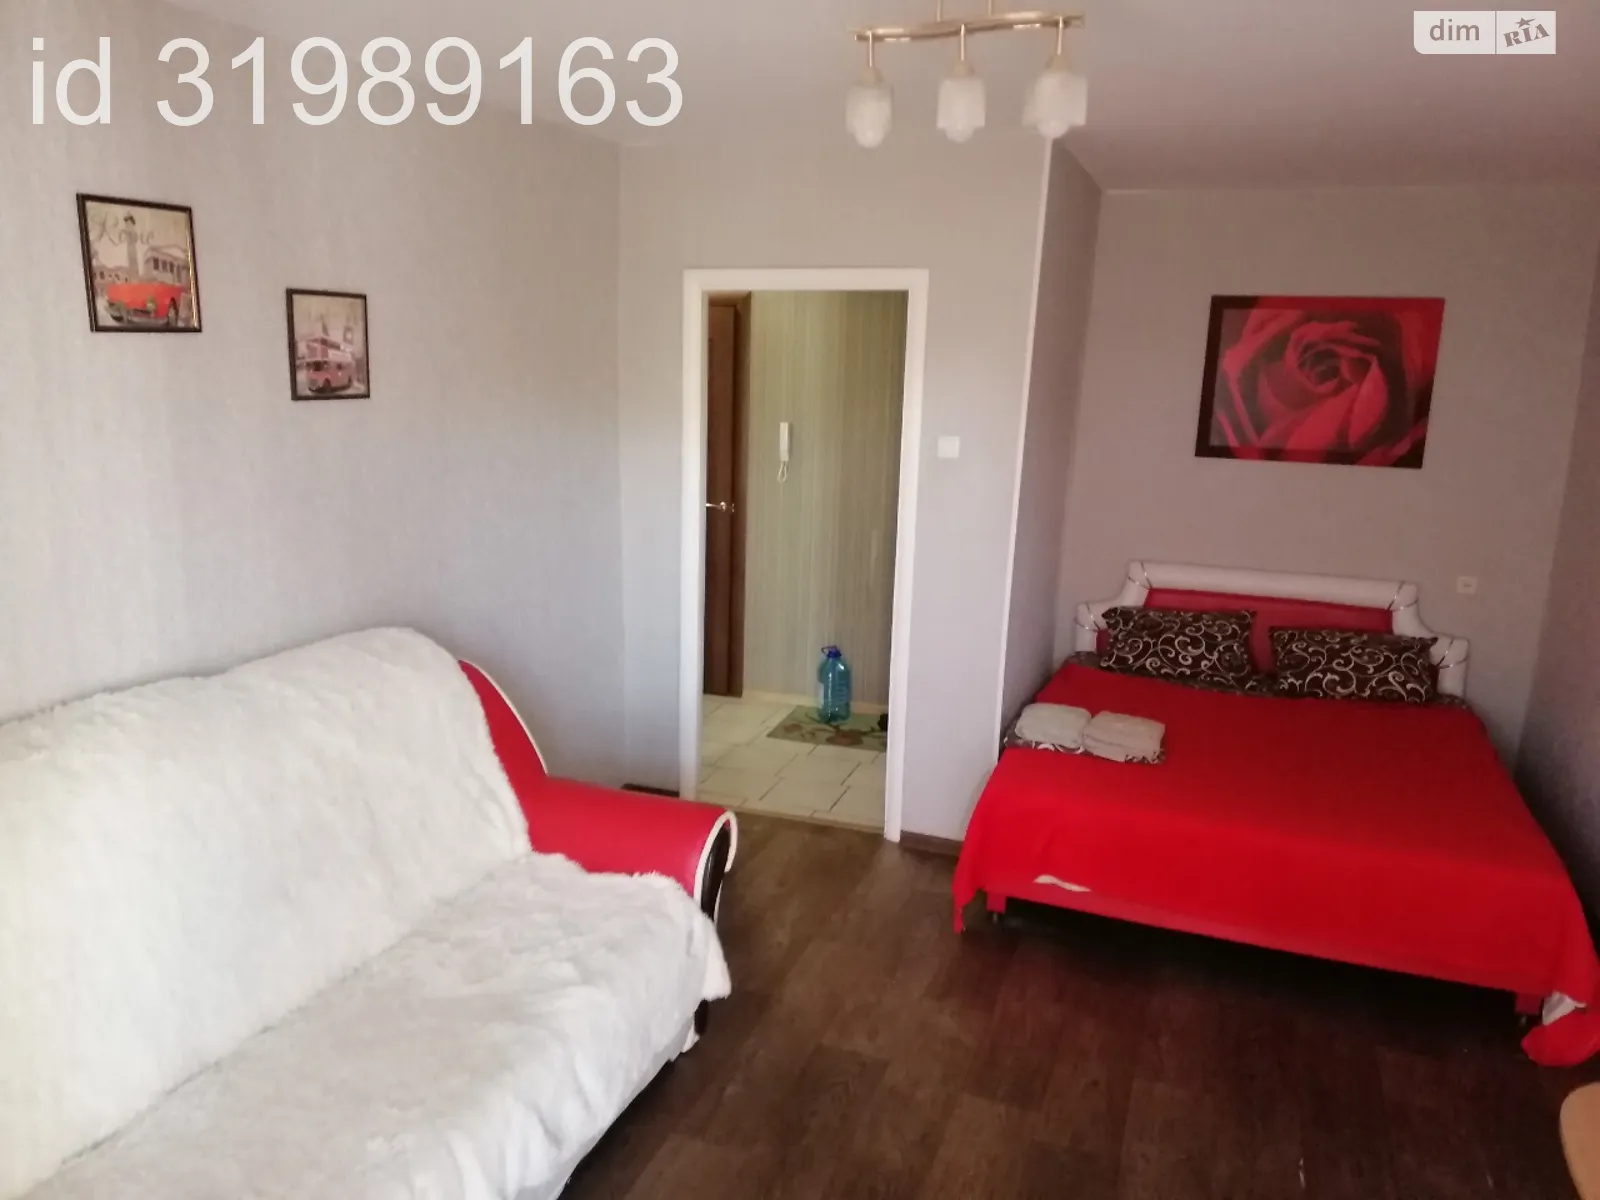 1-кімнатна квартира у Запоріжжі, цена: 700 грн - фото 1